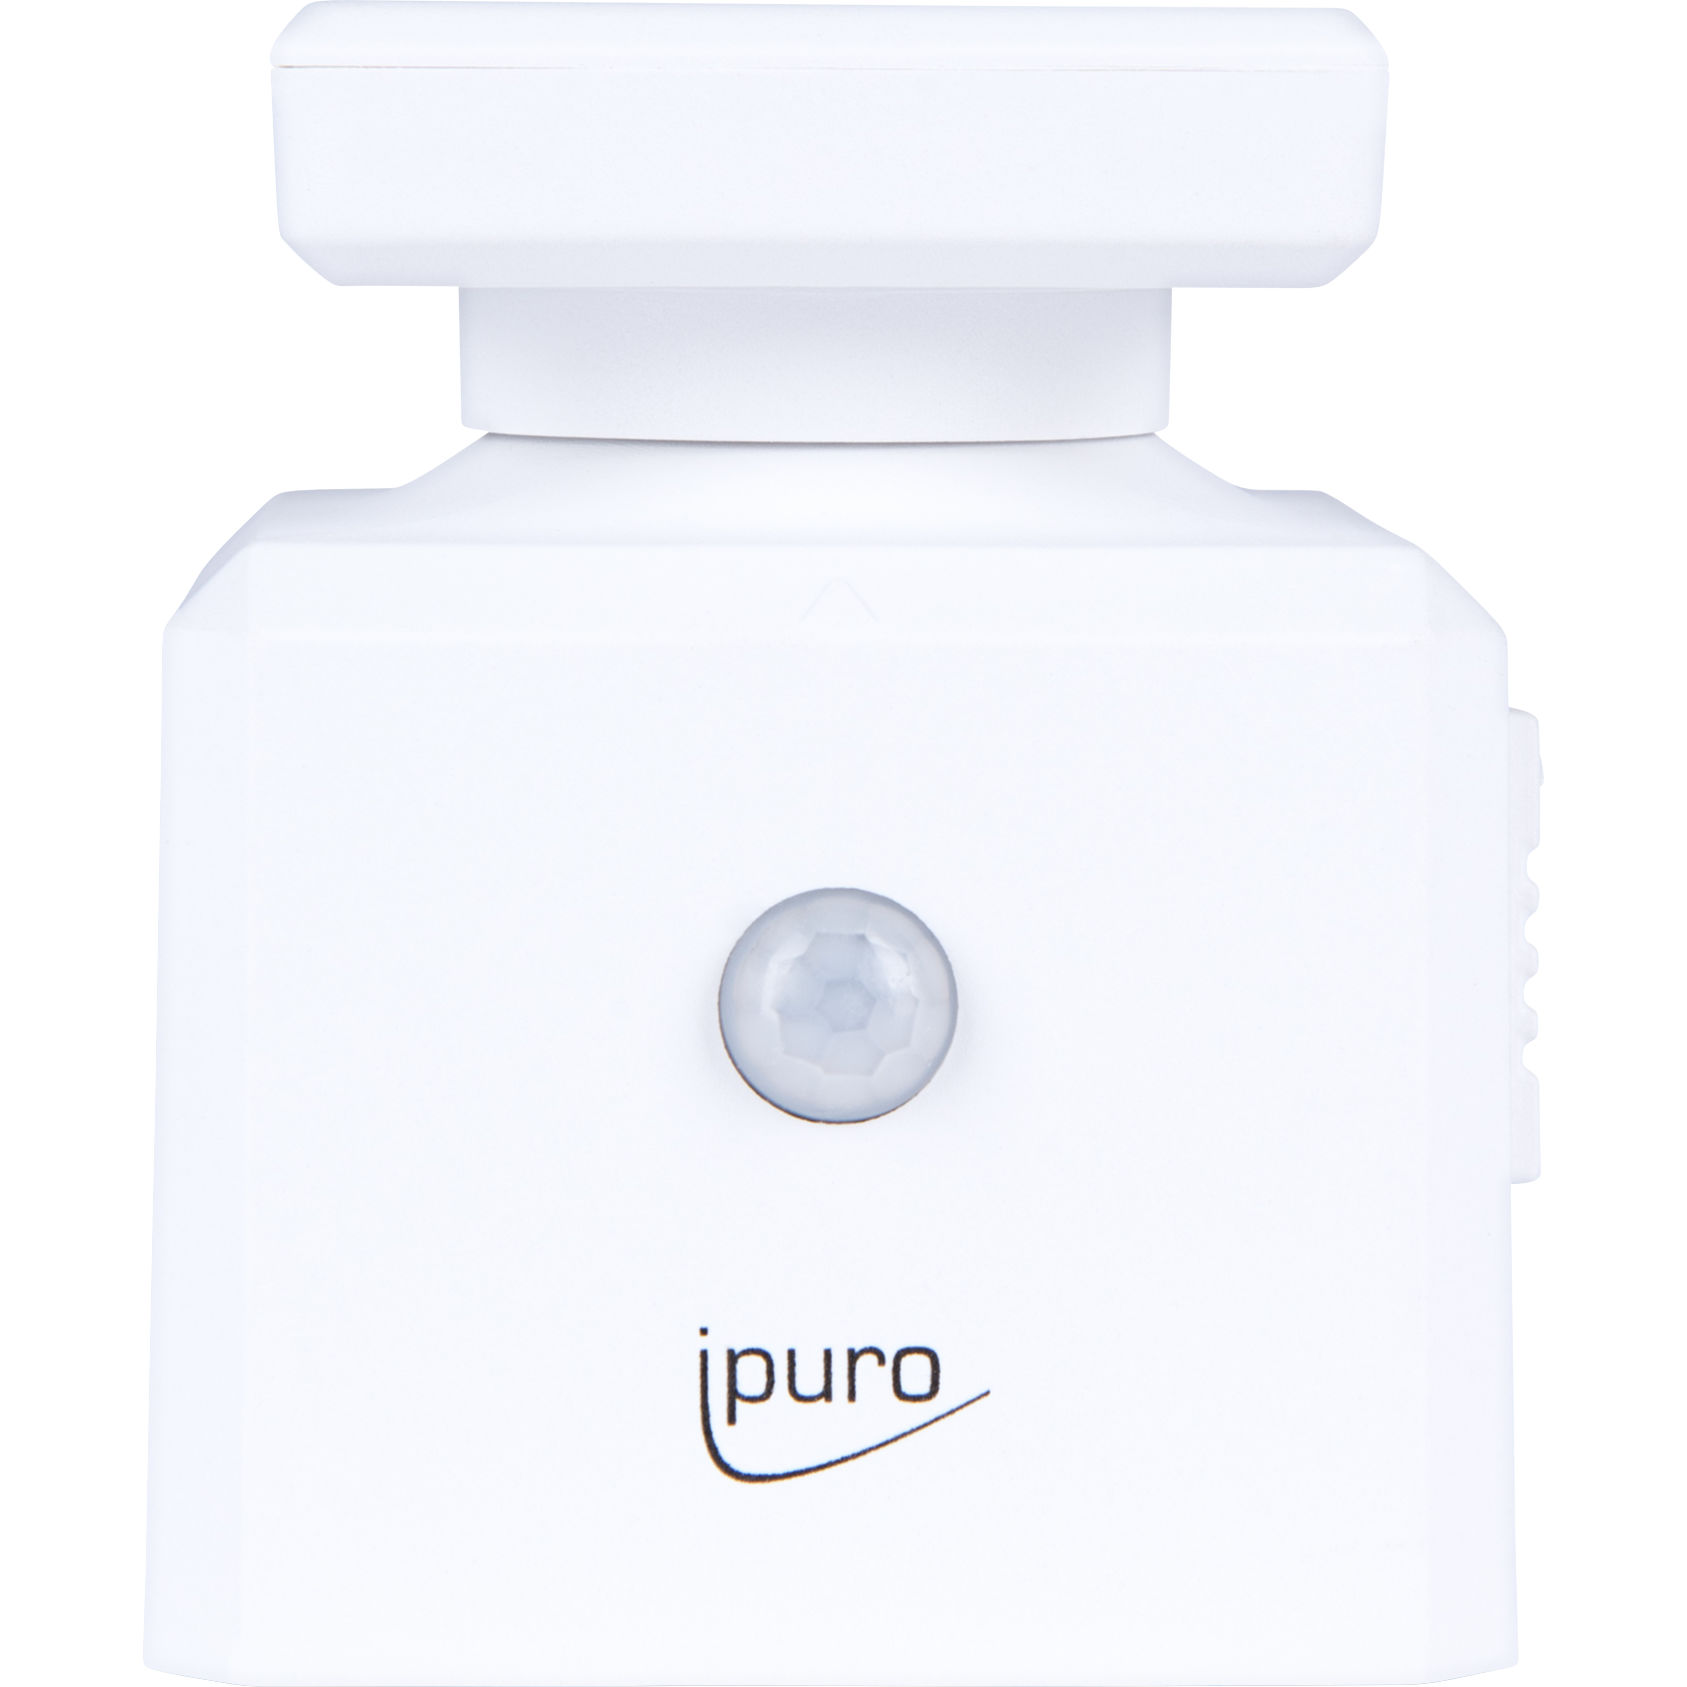 ipuro Plug-in Essentials - Jetzt online kaufen